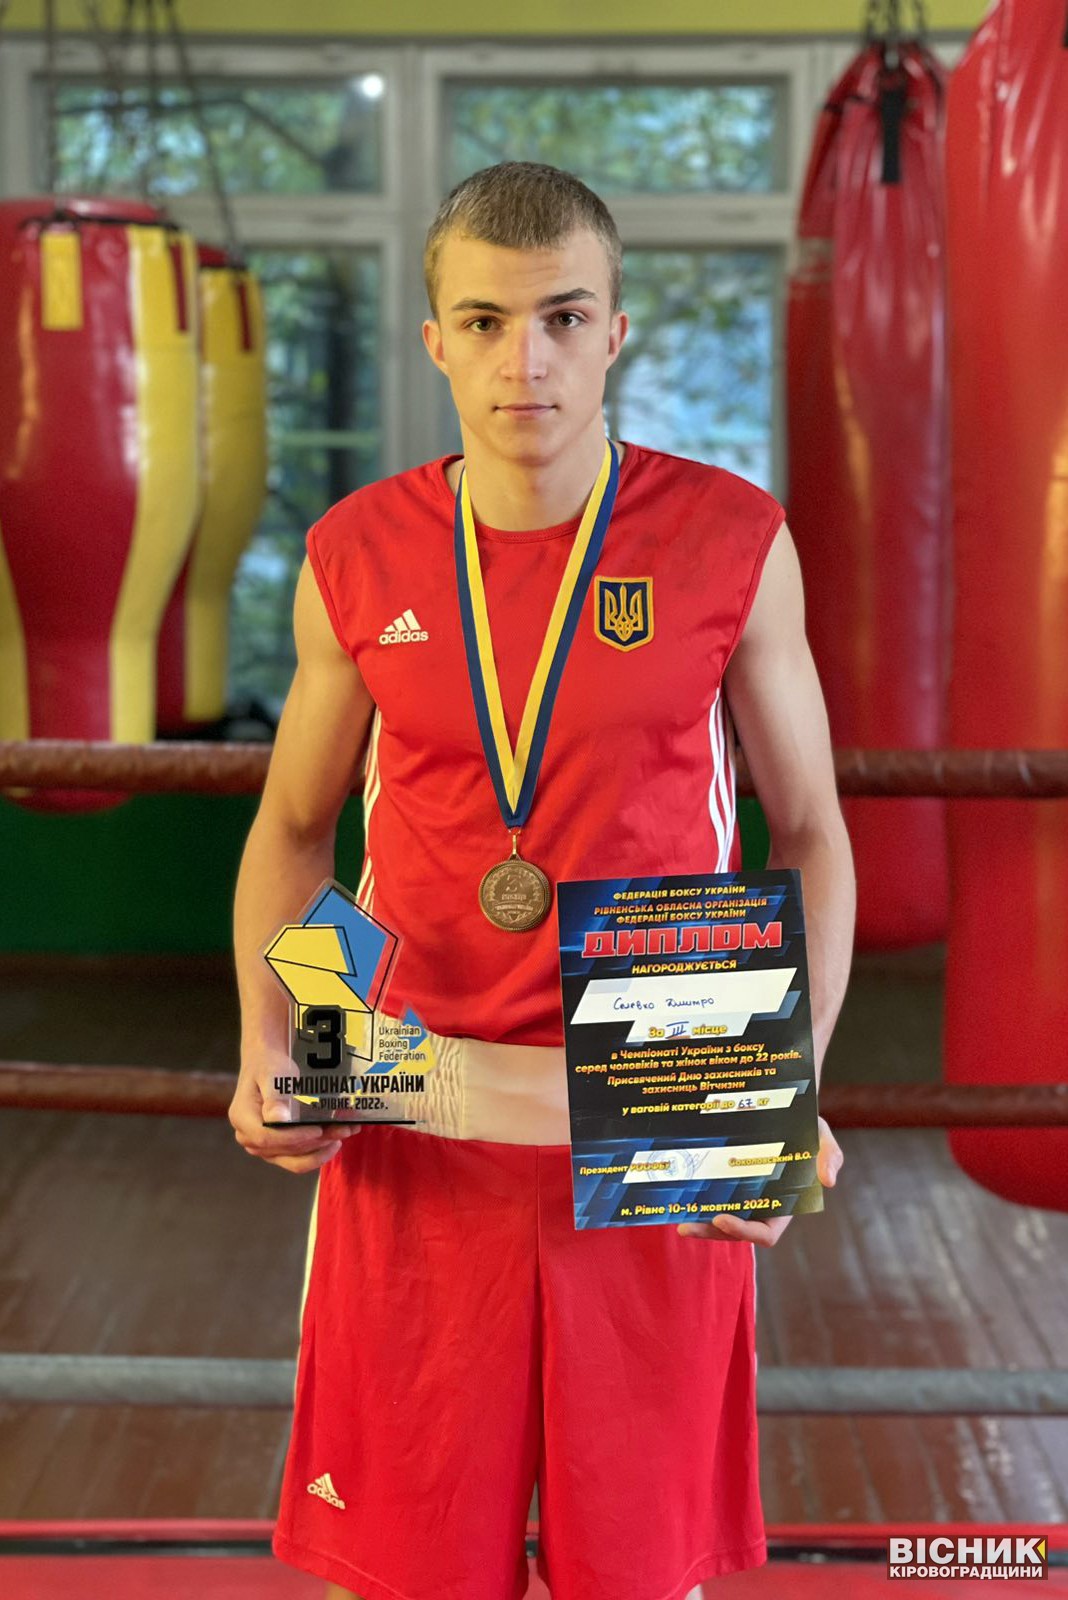 Дмитро Селевко — бронзовий призер чемпіонату України з боксу 